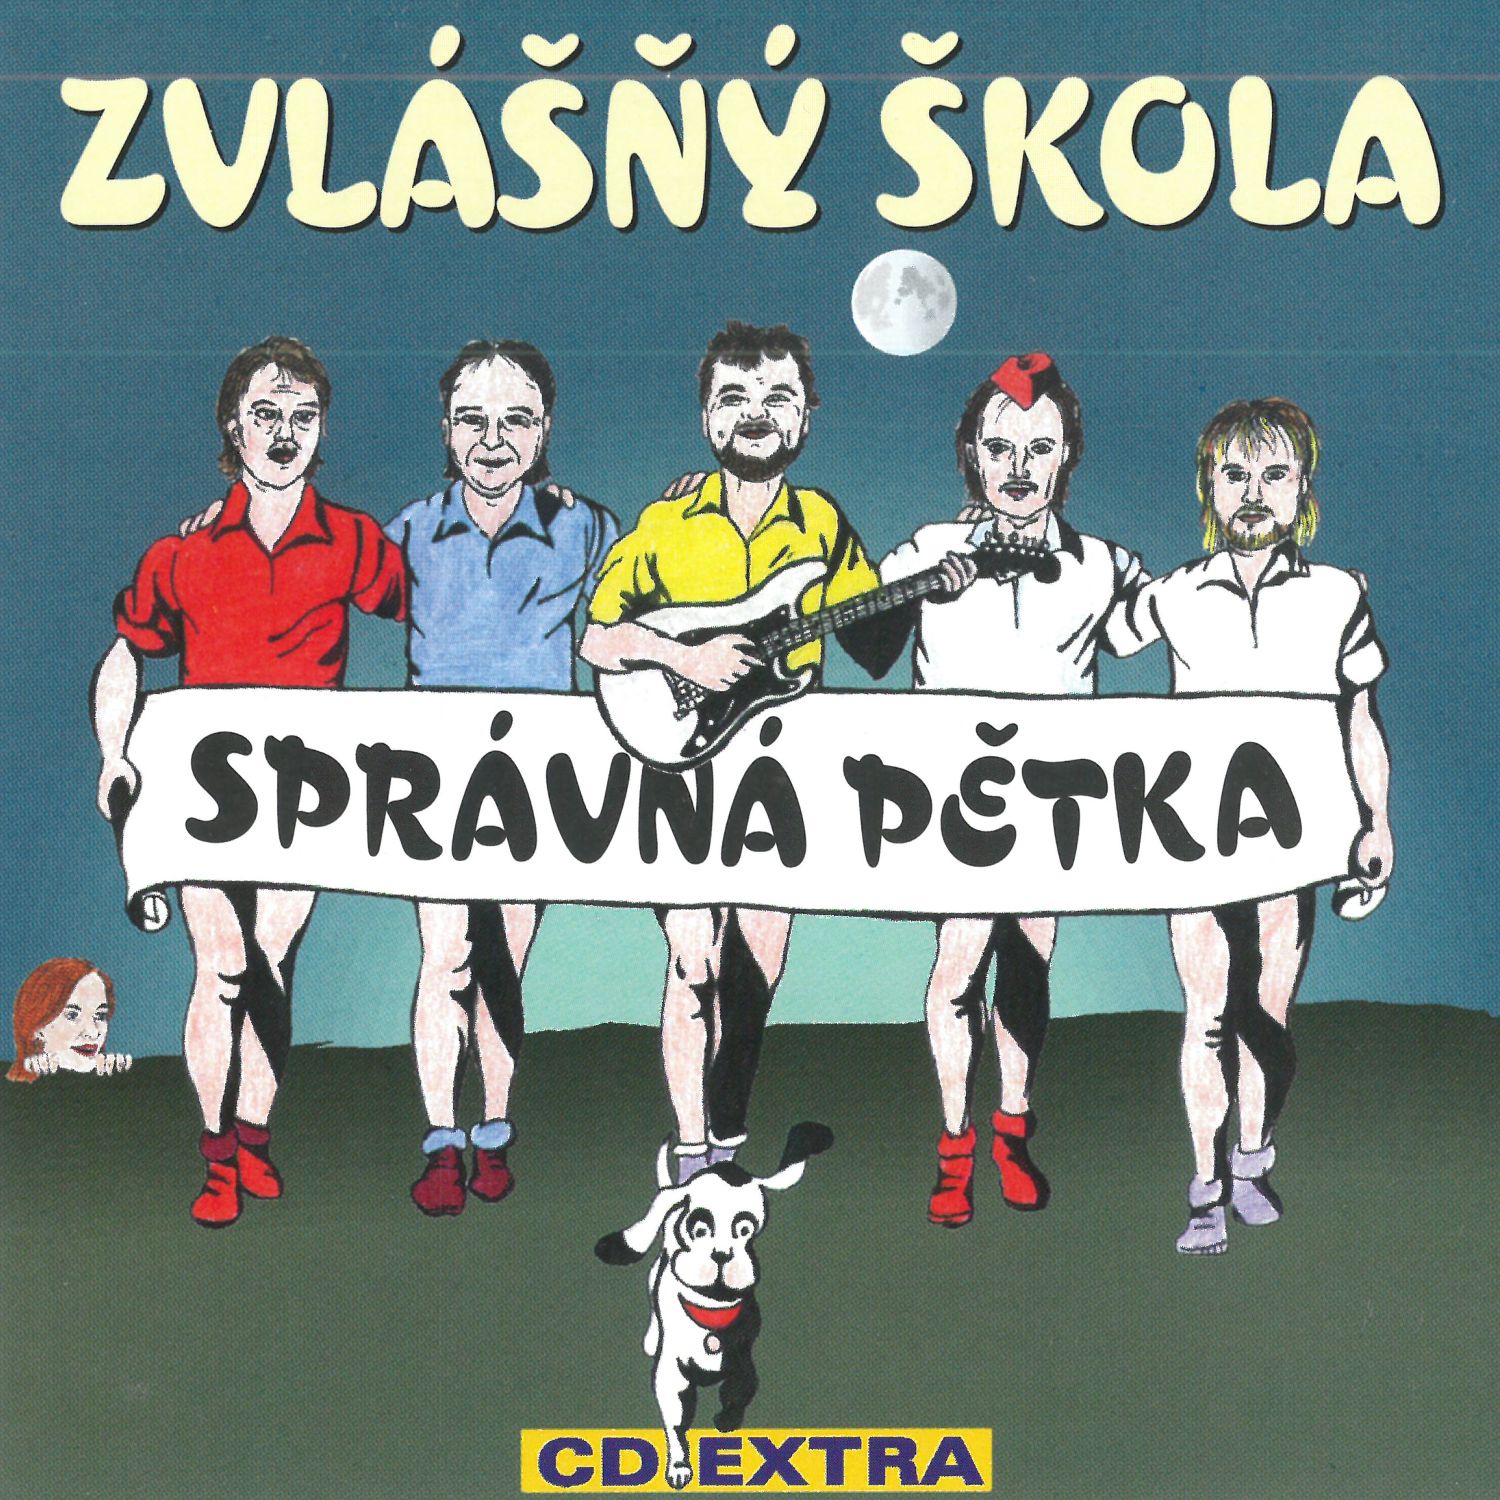 CD Shop - ZVLASNY SKOLA SPRAVNA PETKA